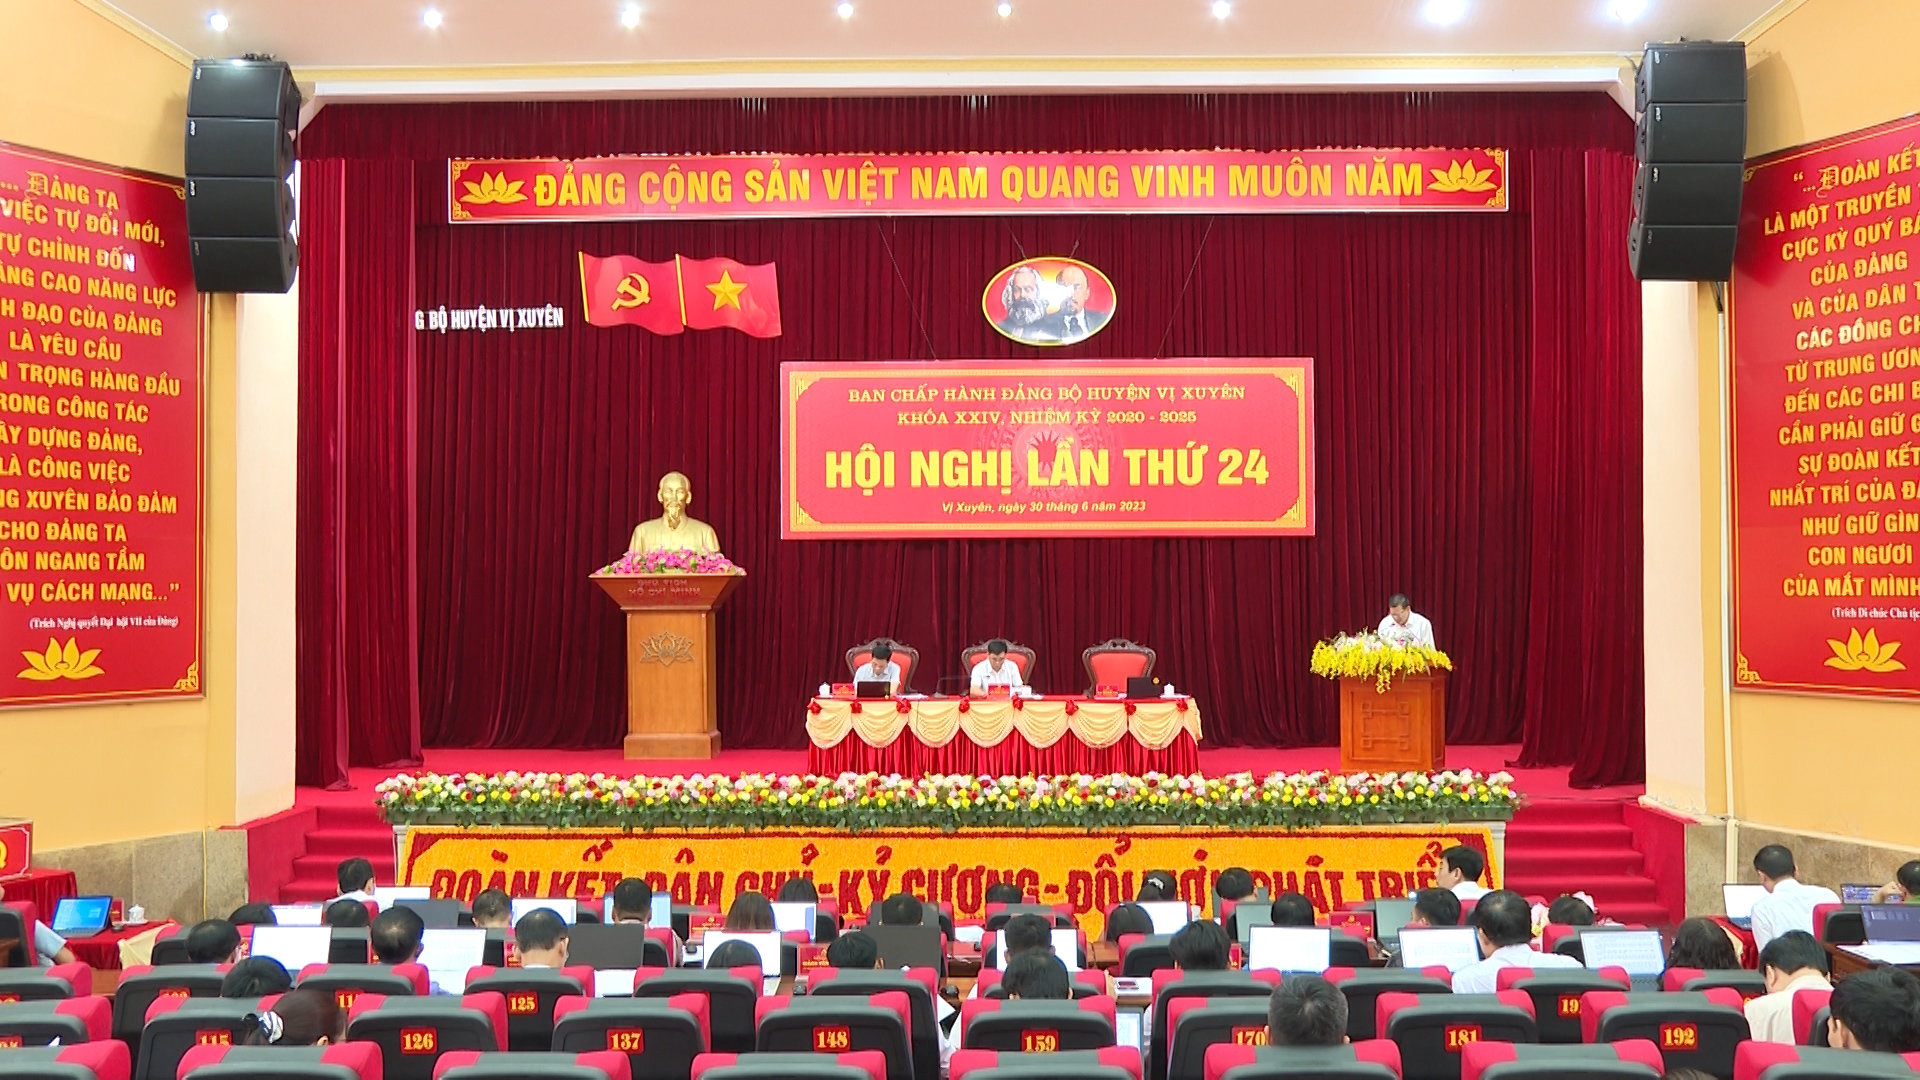 Hội nghị BCH lần thứ 24 Đảng bộ huyện Vị Xuyên khóa XXIV, nhiệm kỳ 2020 – 2025.